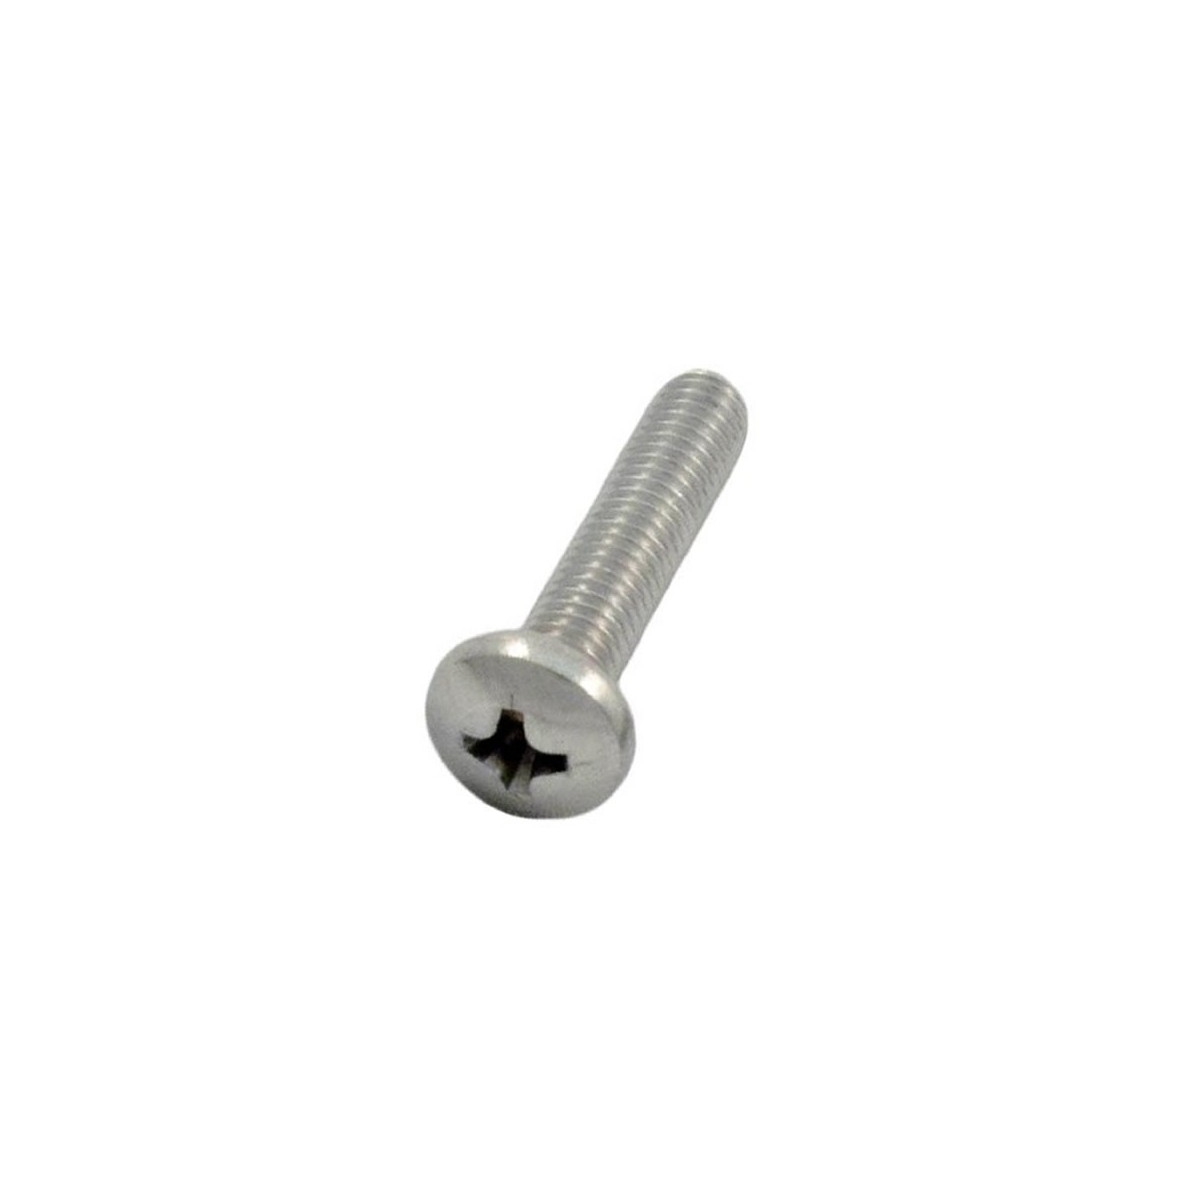 10-32 x 7/8” stainless steel screw. Polaris 280 W7230228